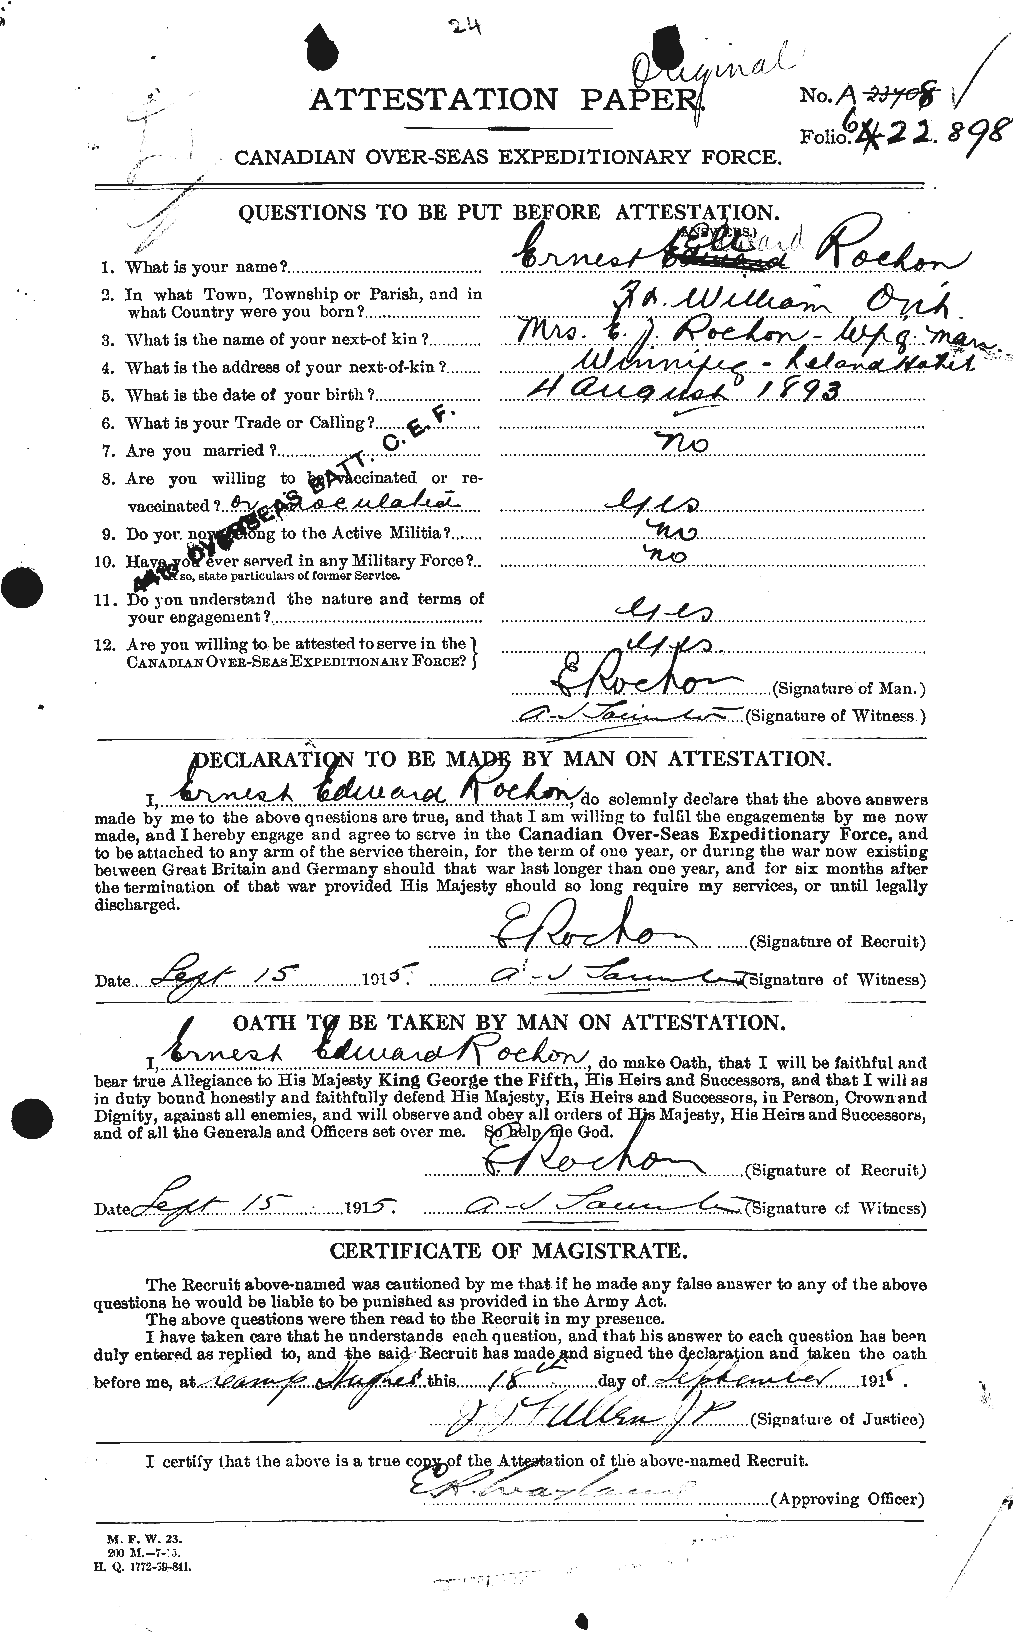 Dossiers du Personnel de la Première Guerre mondiale - CEC 609049a